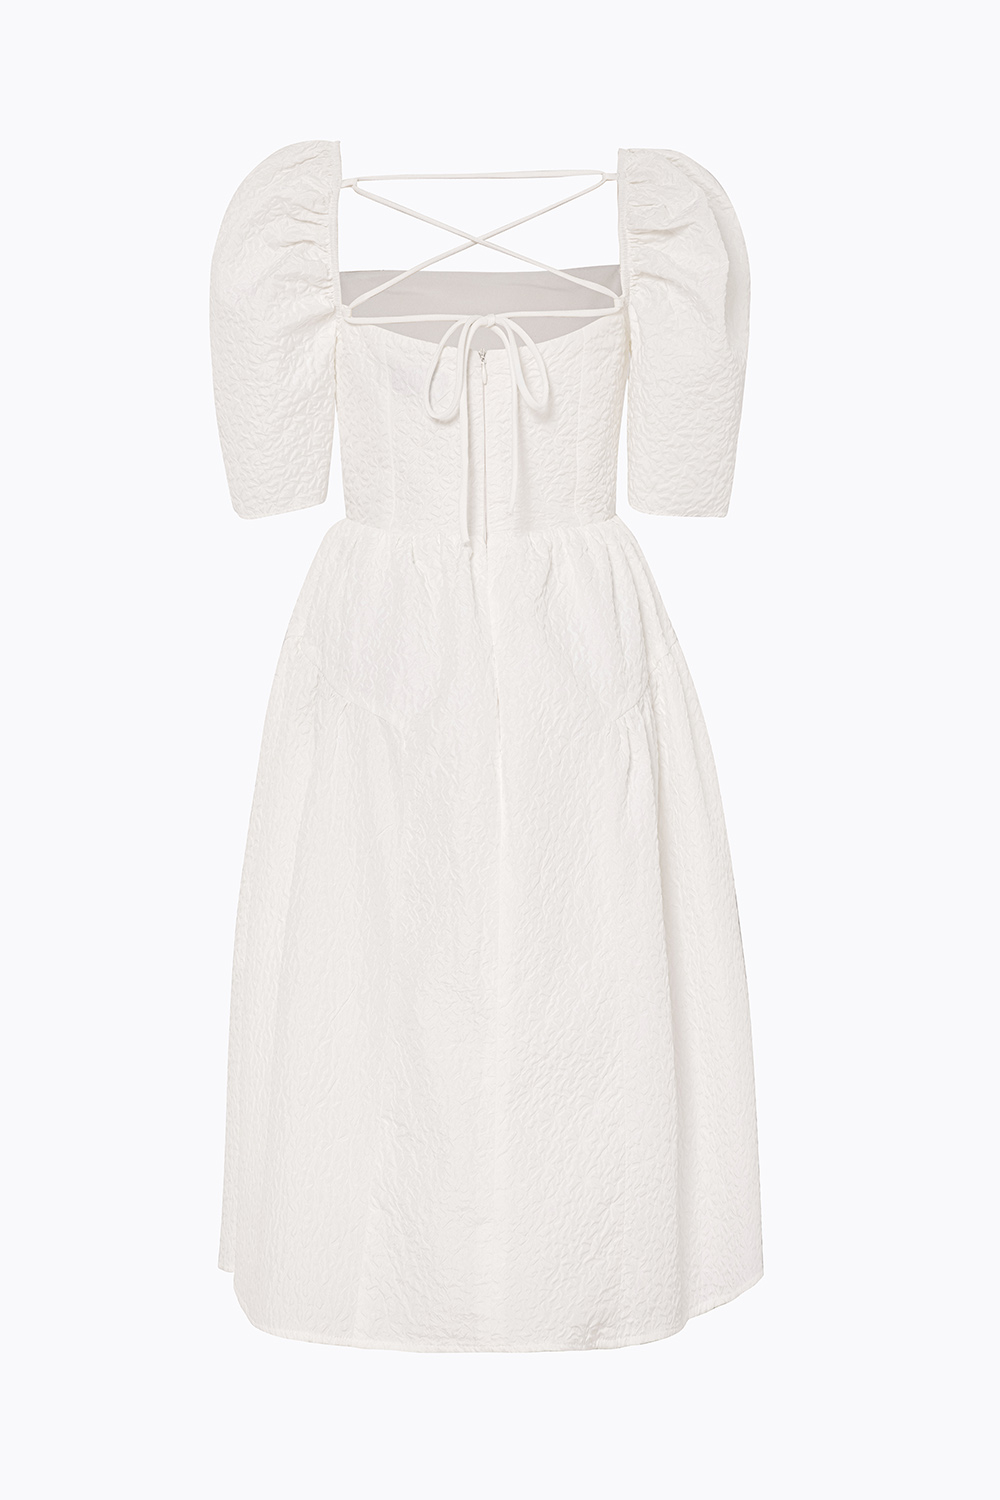 Đầm trắng dáng xòe cổ vuông tay phồng KK119-08 | Thời trang công ...